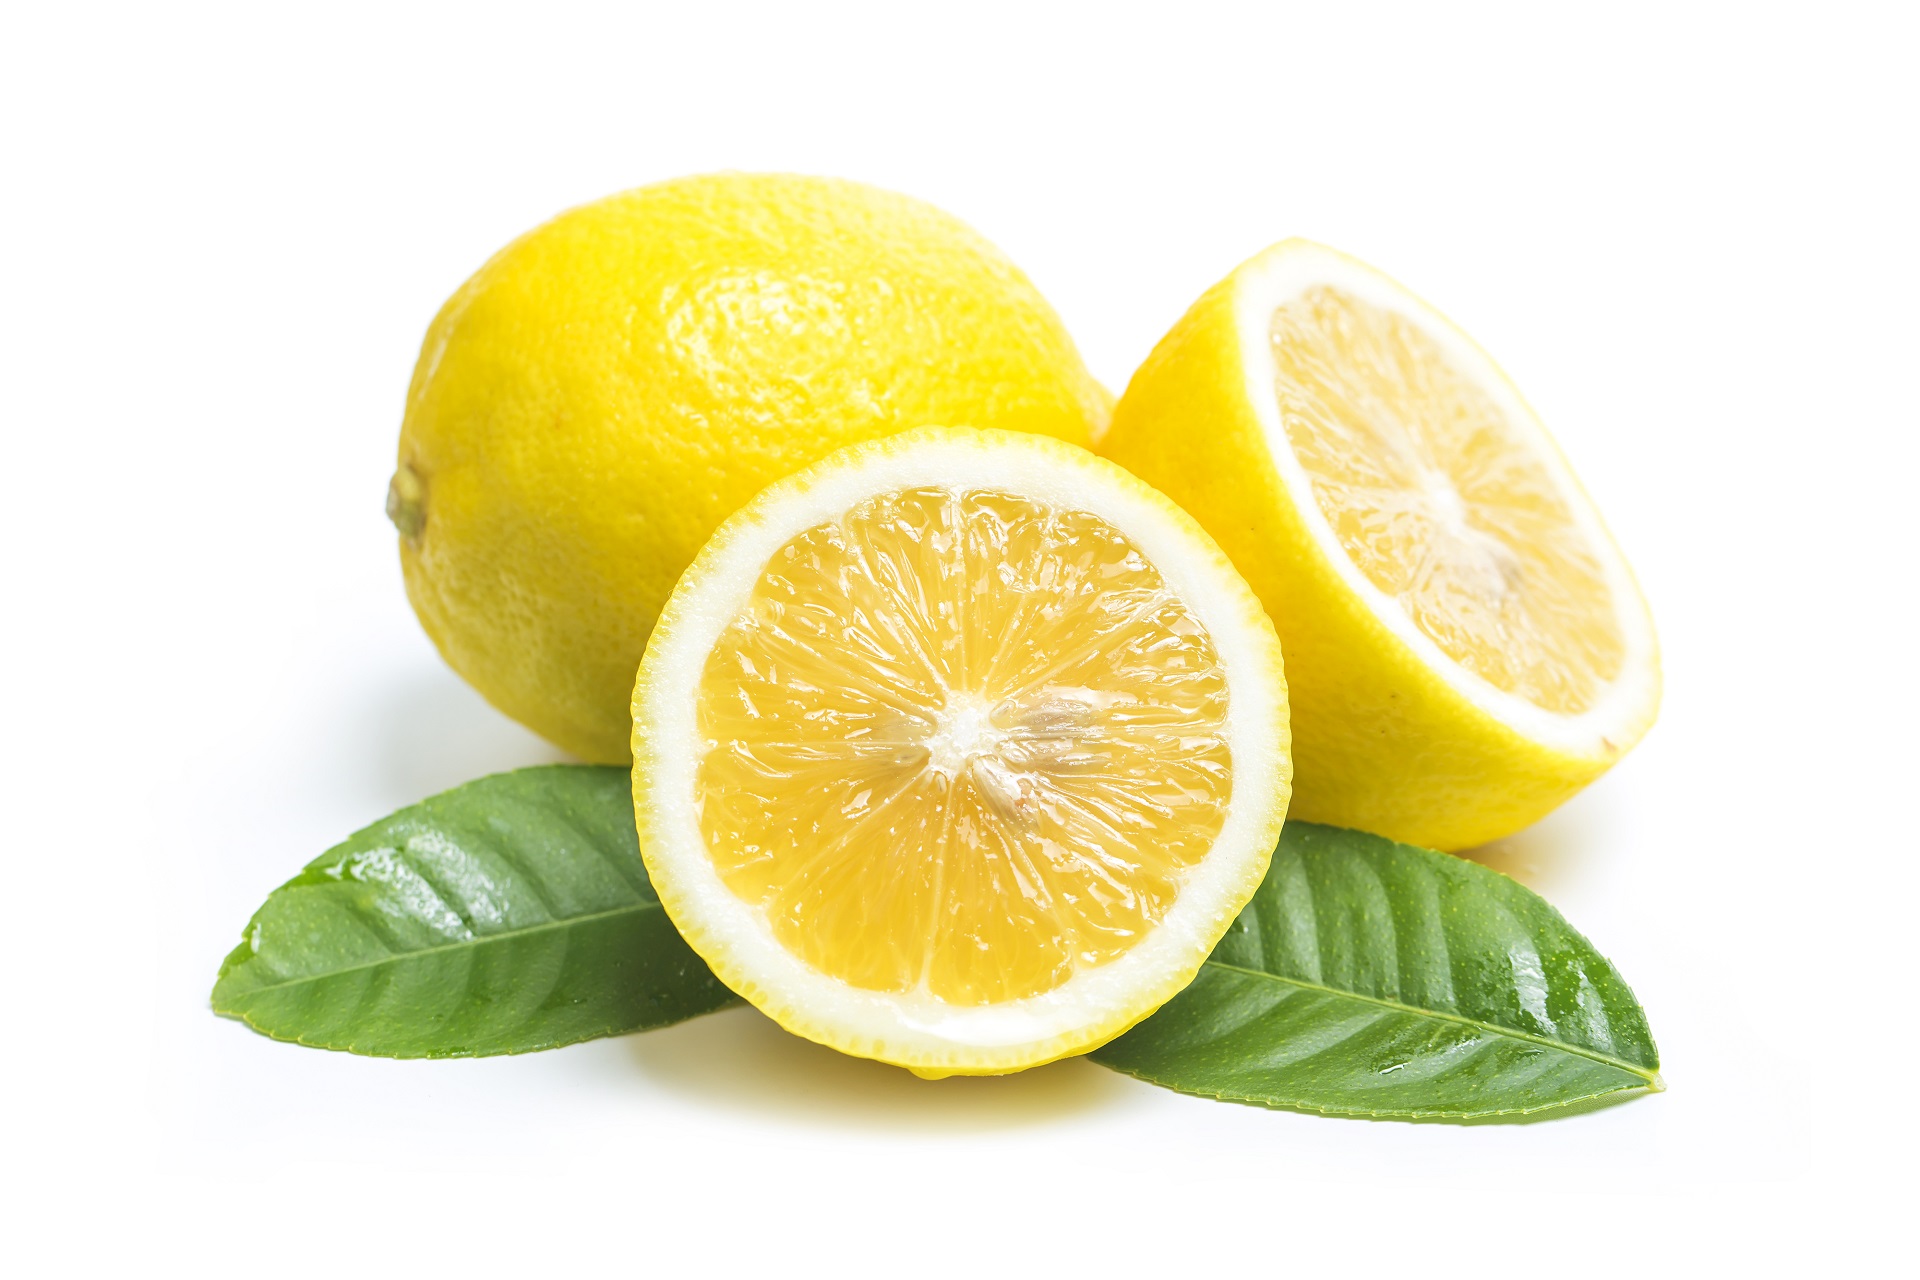  közönséges citrom